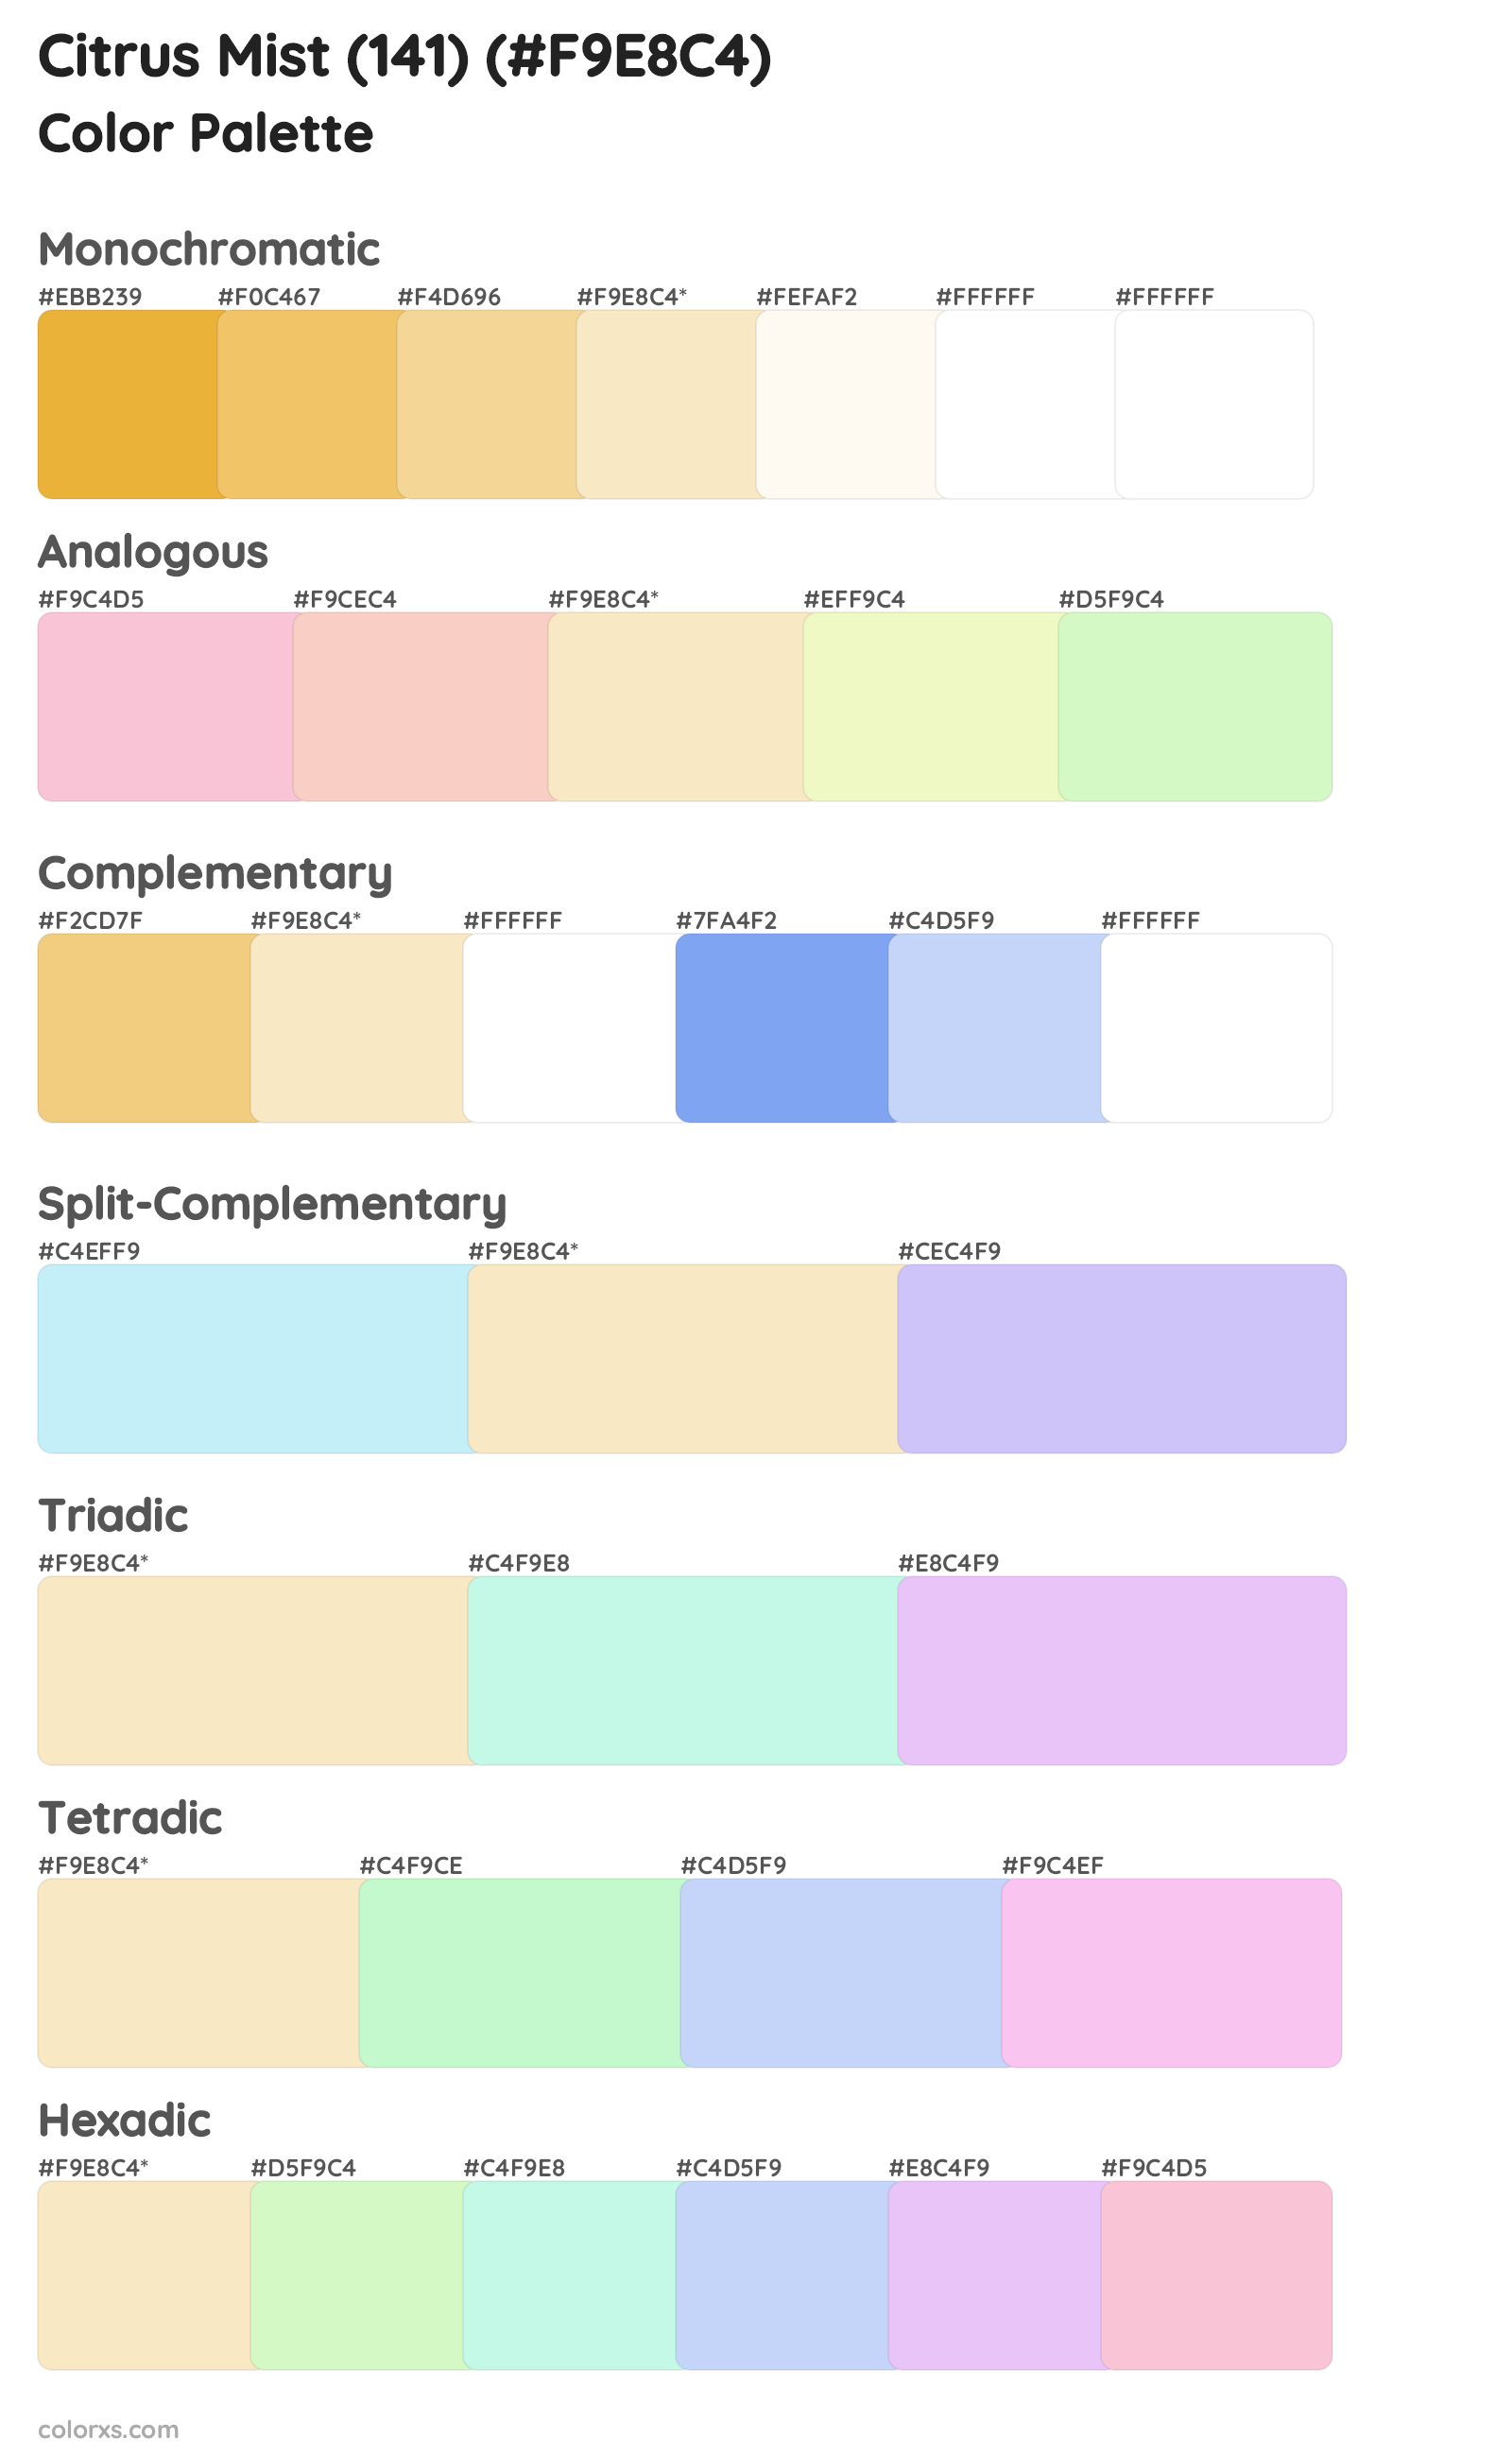 Citrus Mist (141) Color Scheme Palettes